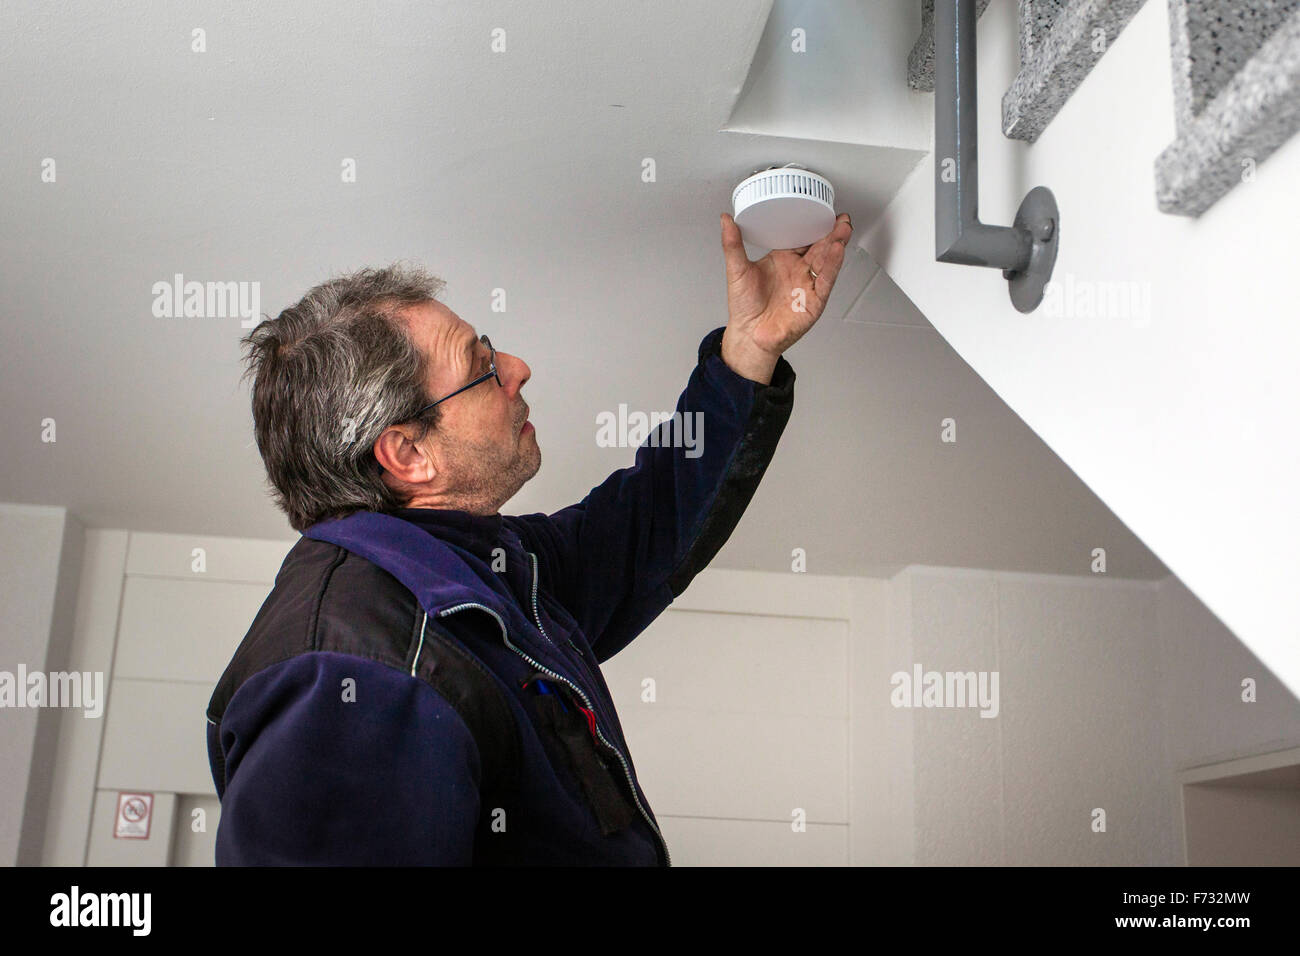 Hausmeister in einem Treppenhaus montiert und überprüft einen Rauchmelder  Stockfotografie - Alamy